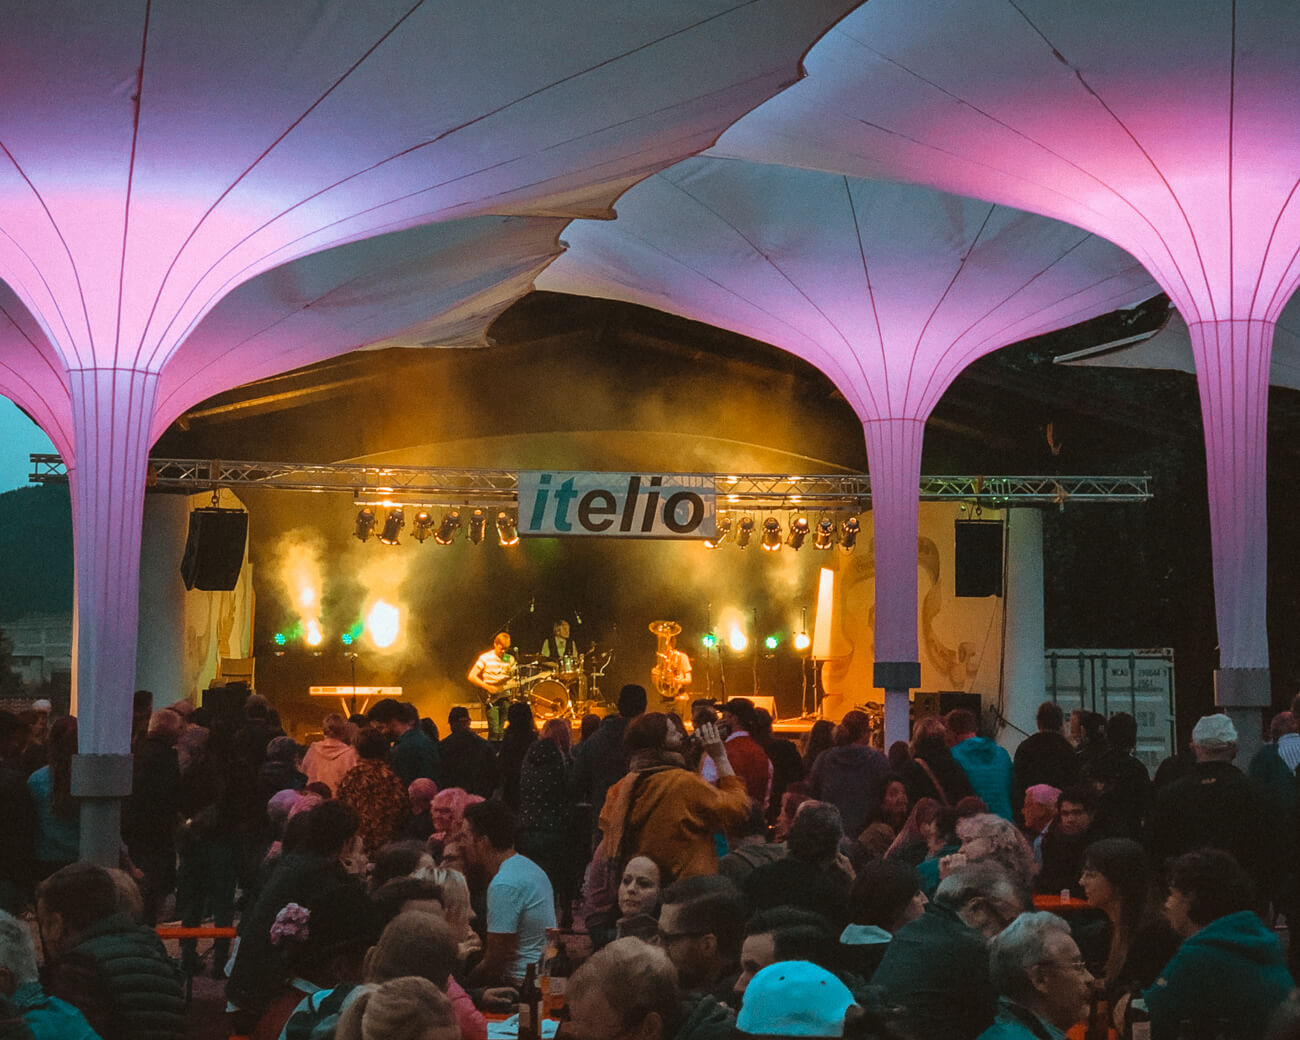 Bühne mit Band und Lcihter, Gäste im Vordergrund, Große Sonnenschirme lila beleuchtet